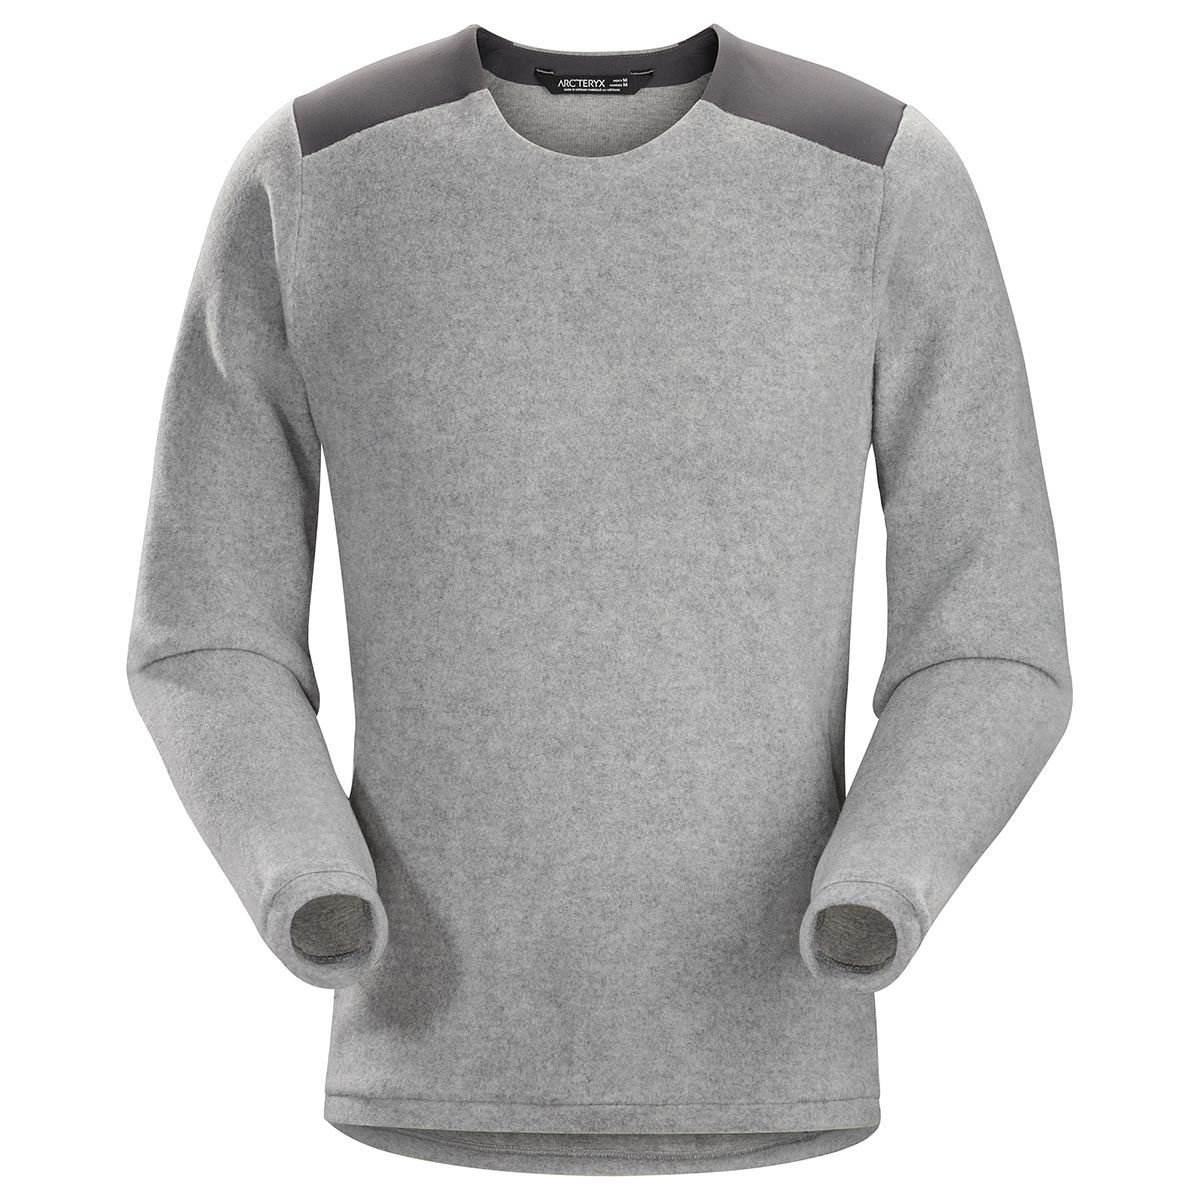 Donavan Crew Neck Sweater, men's, Fall 2019 model